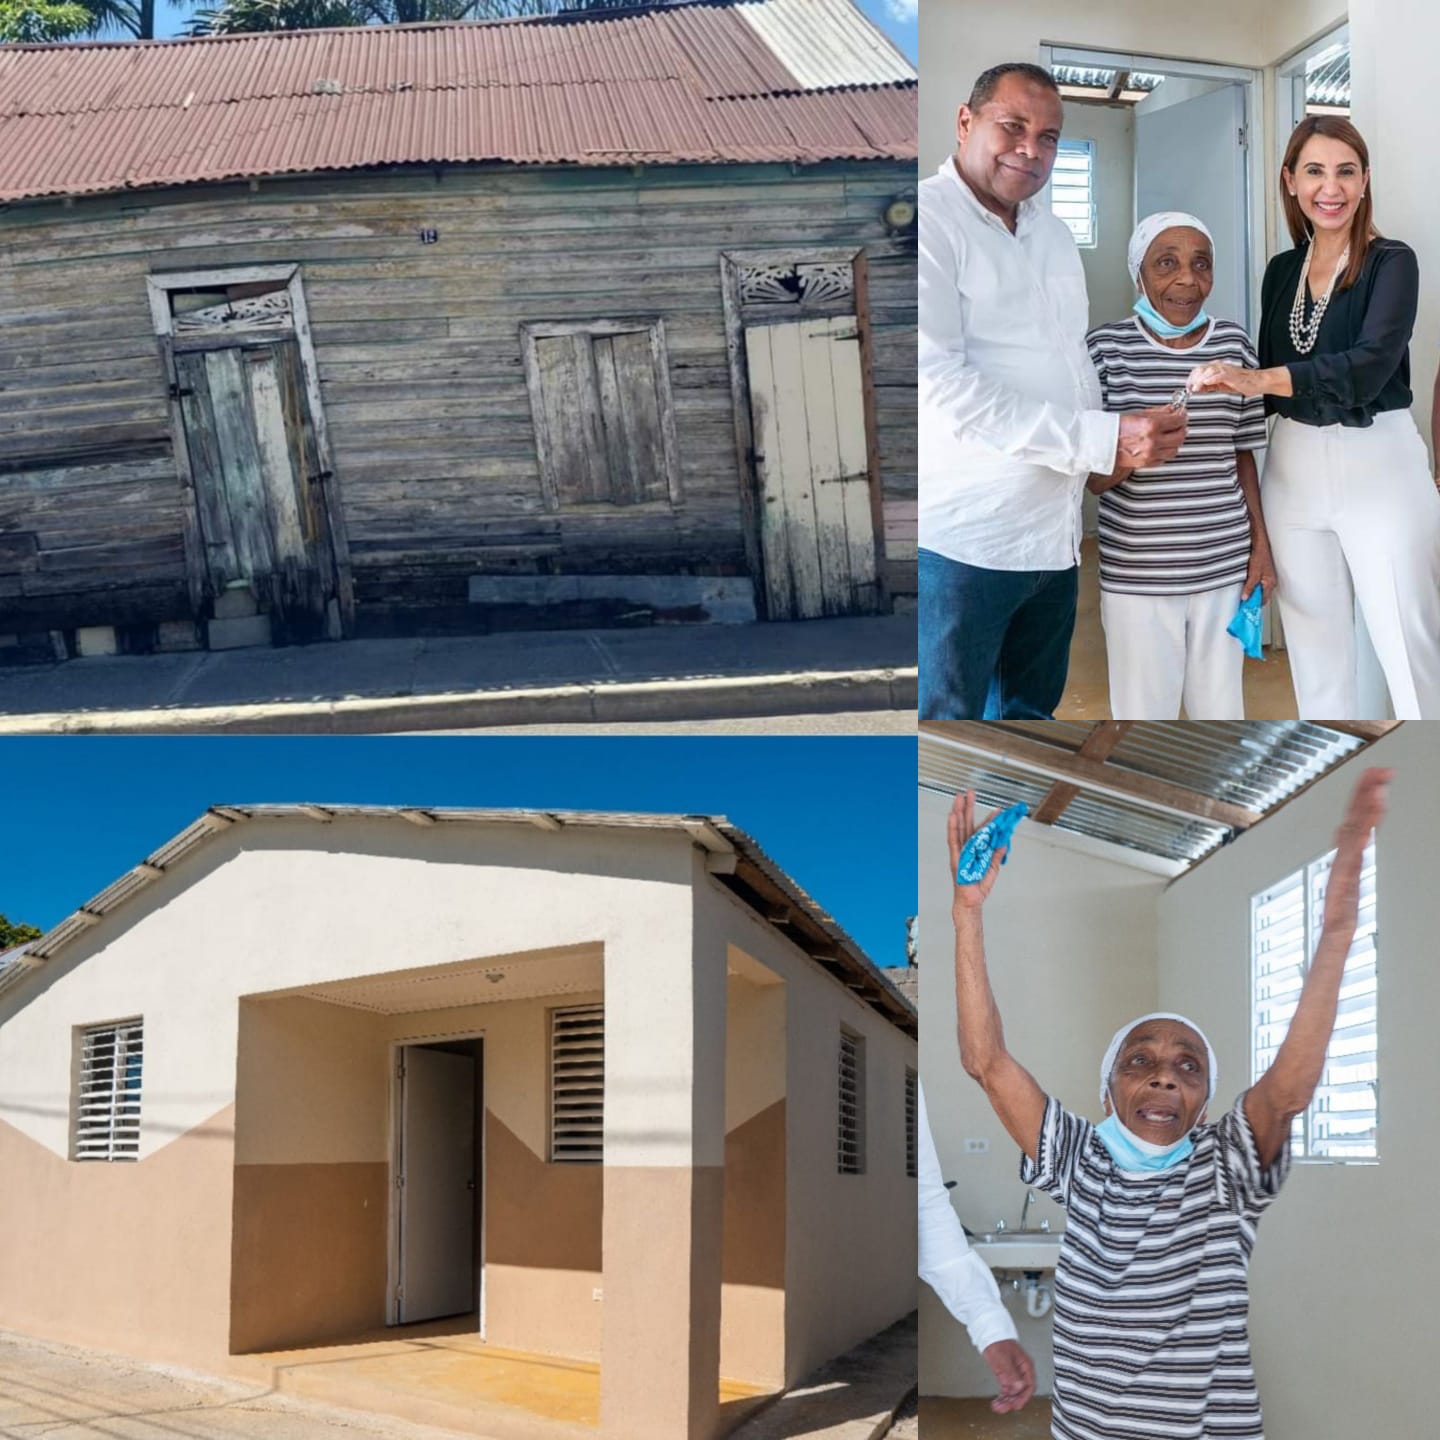  Gobernadora y alcalde de Puerto Plata entregan vivienda a familia de la calle Regalado